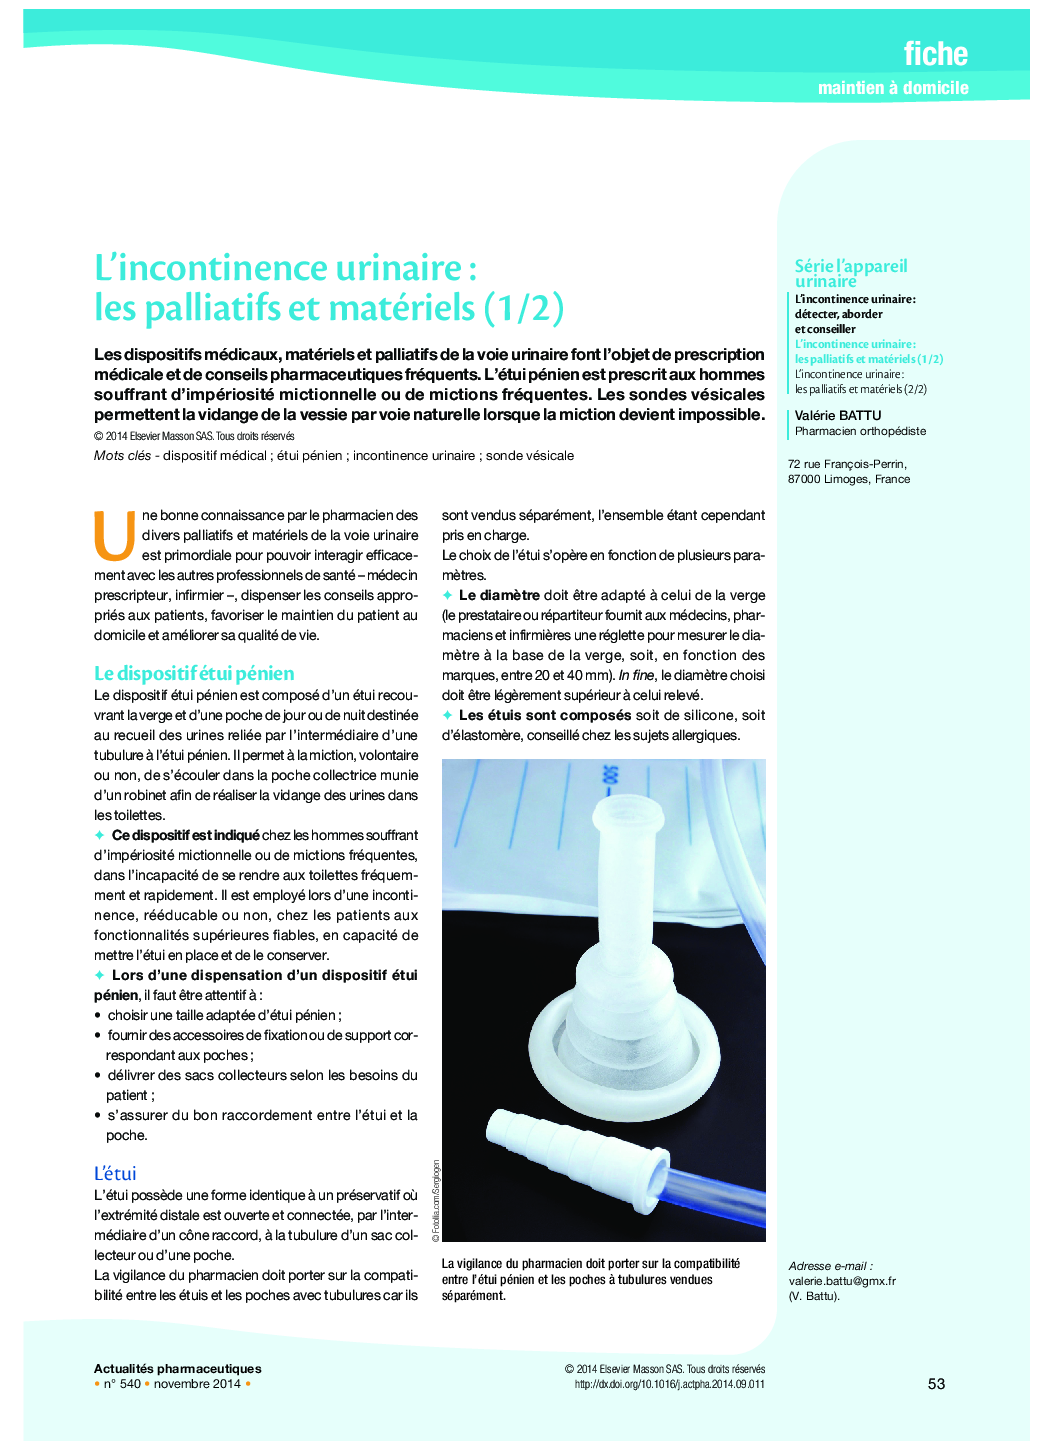 L’incontinence urinaire : les palliatifs et matériels (1/2)